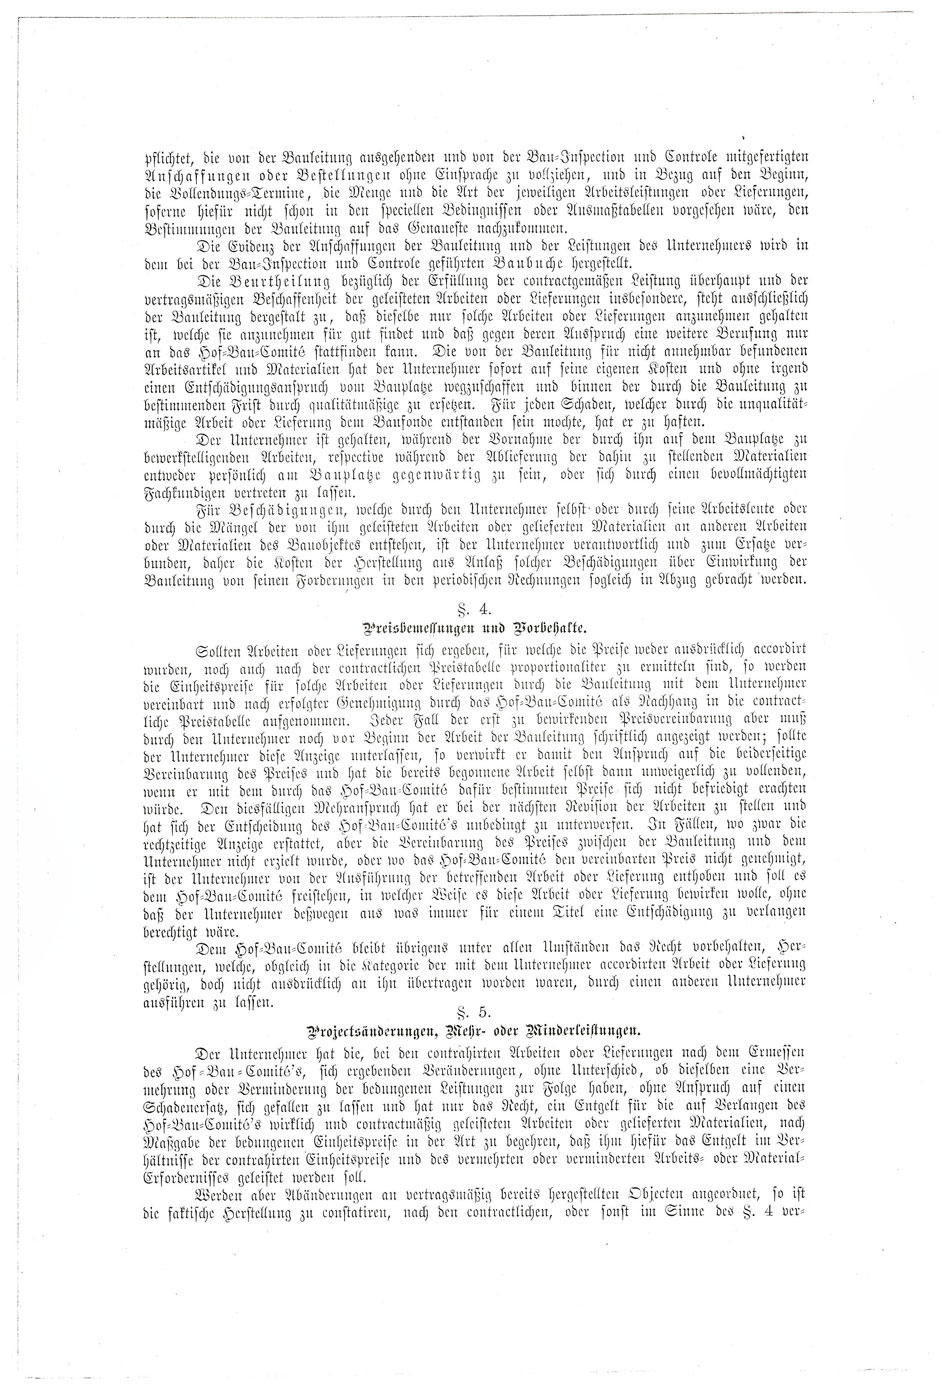 ÖStA: AT-OeStA/AVA Inneres MdI STEF A Hofbauk. 15.47 Zl. 4412 vom 19.07.1879; Blatt 3